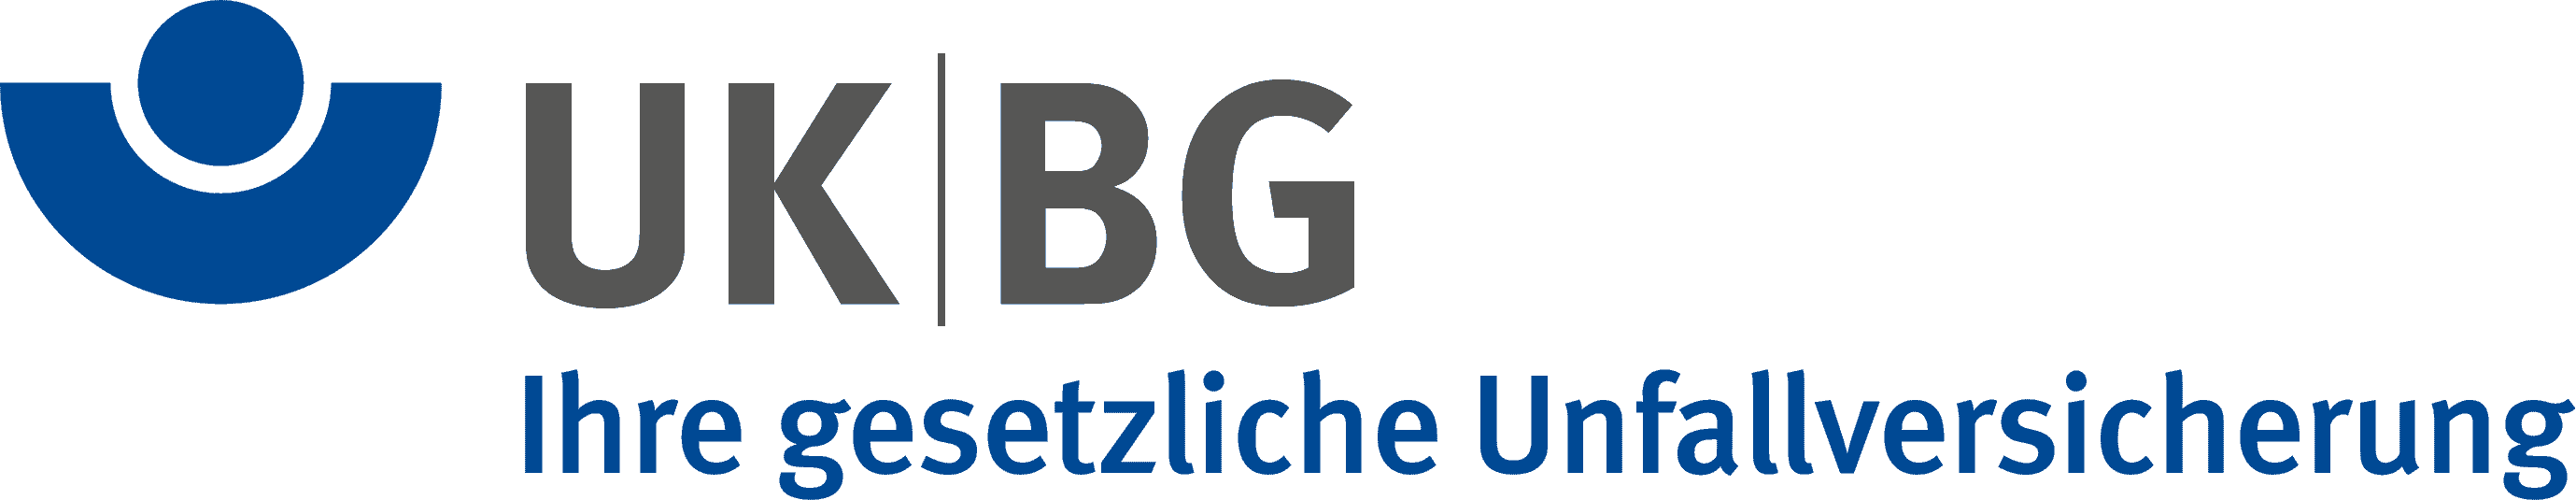 UkBg logo